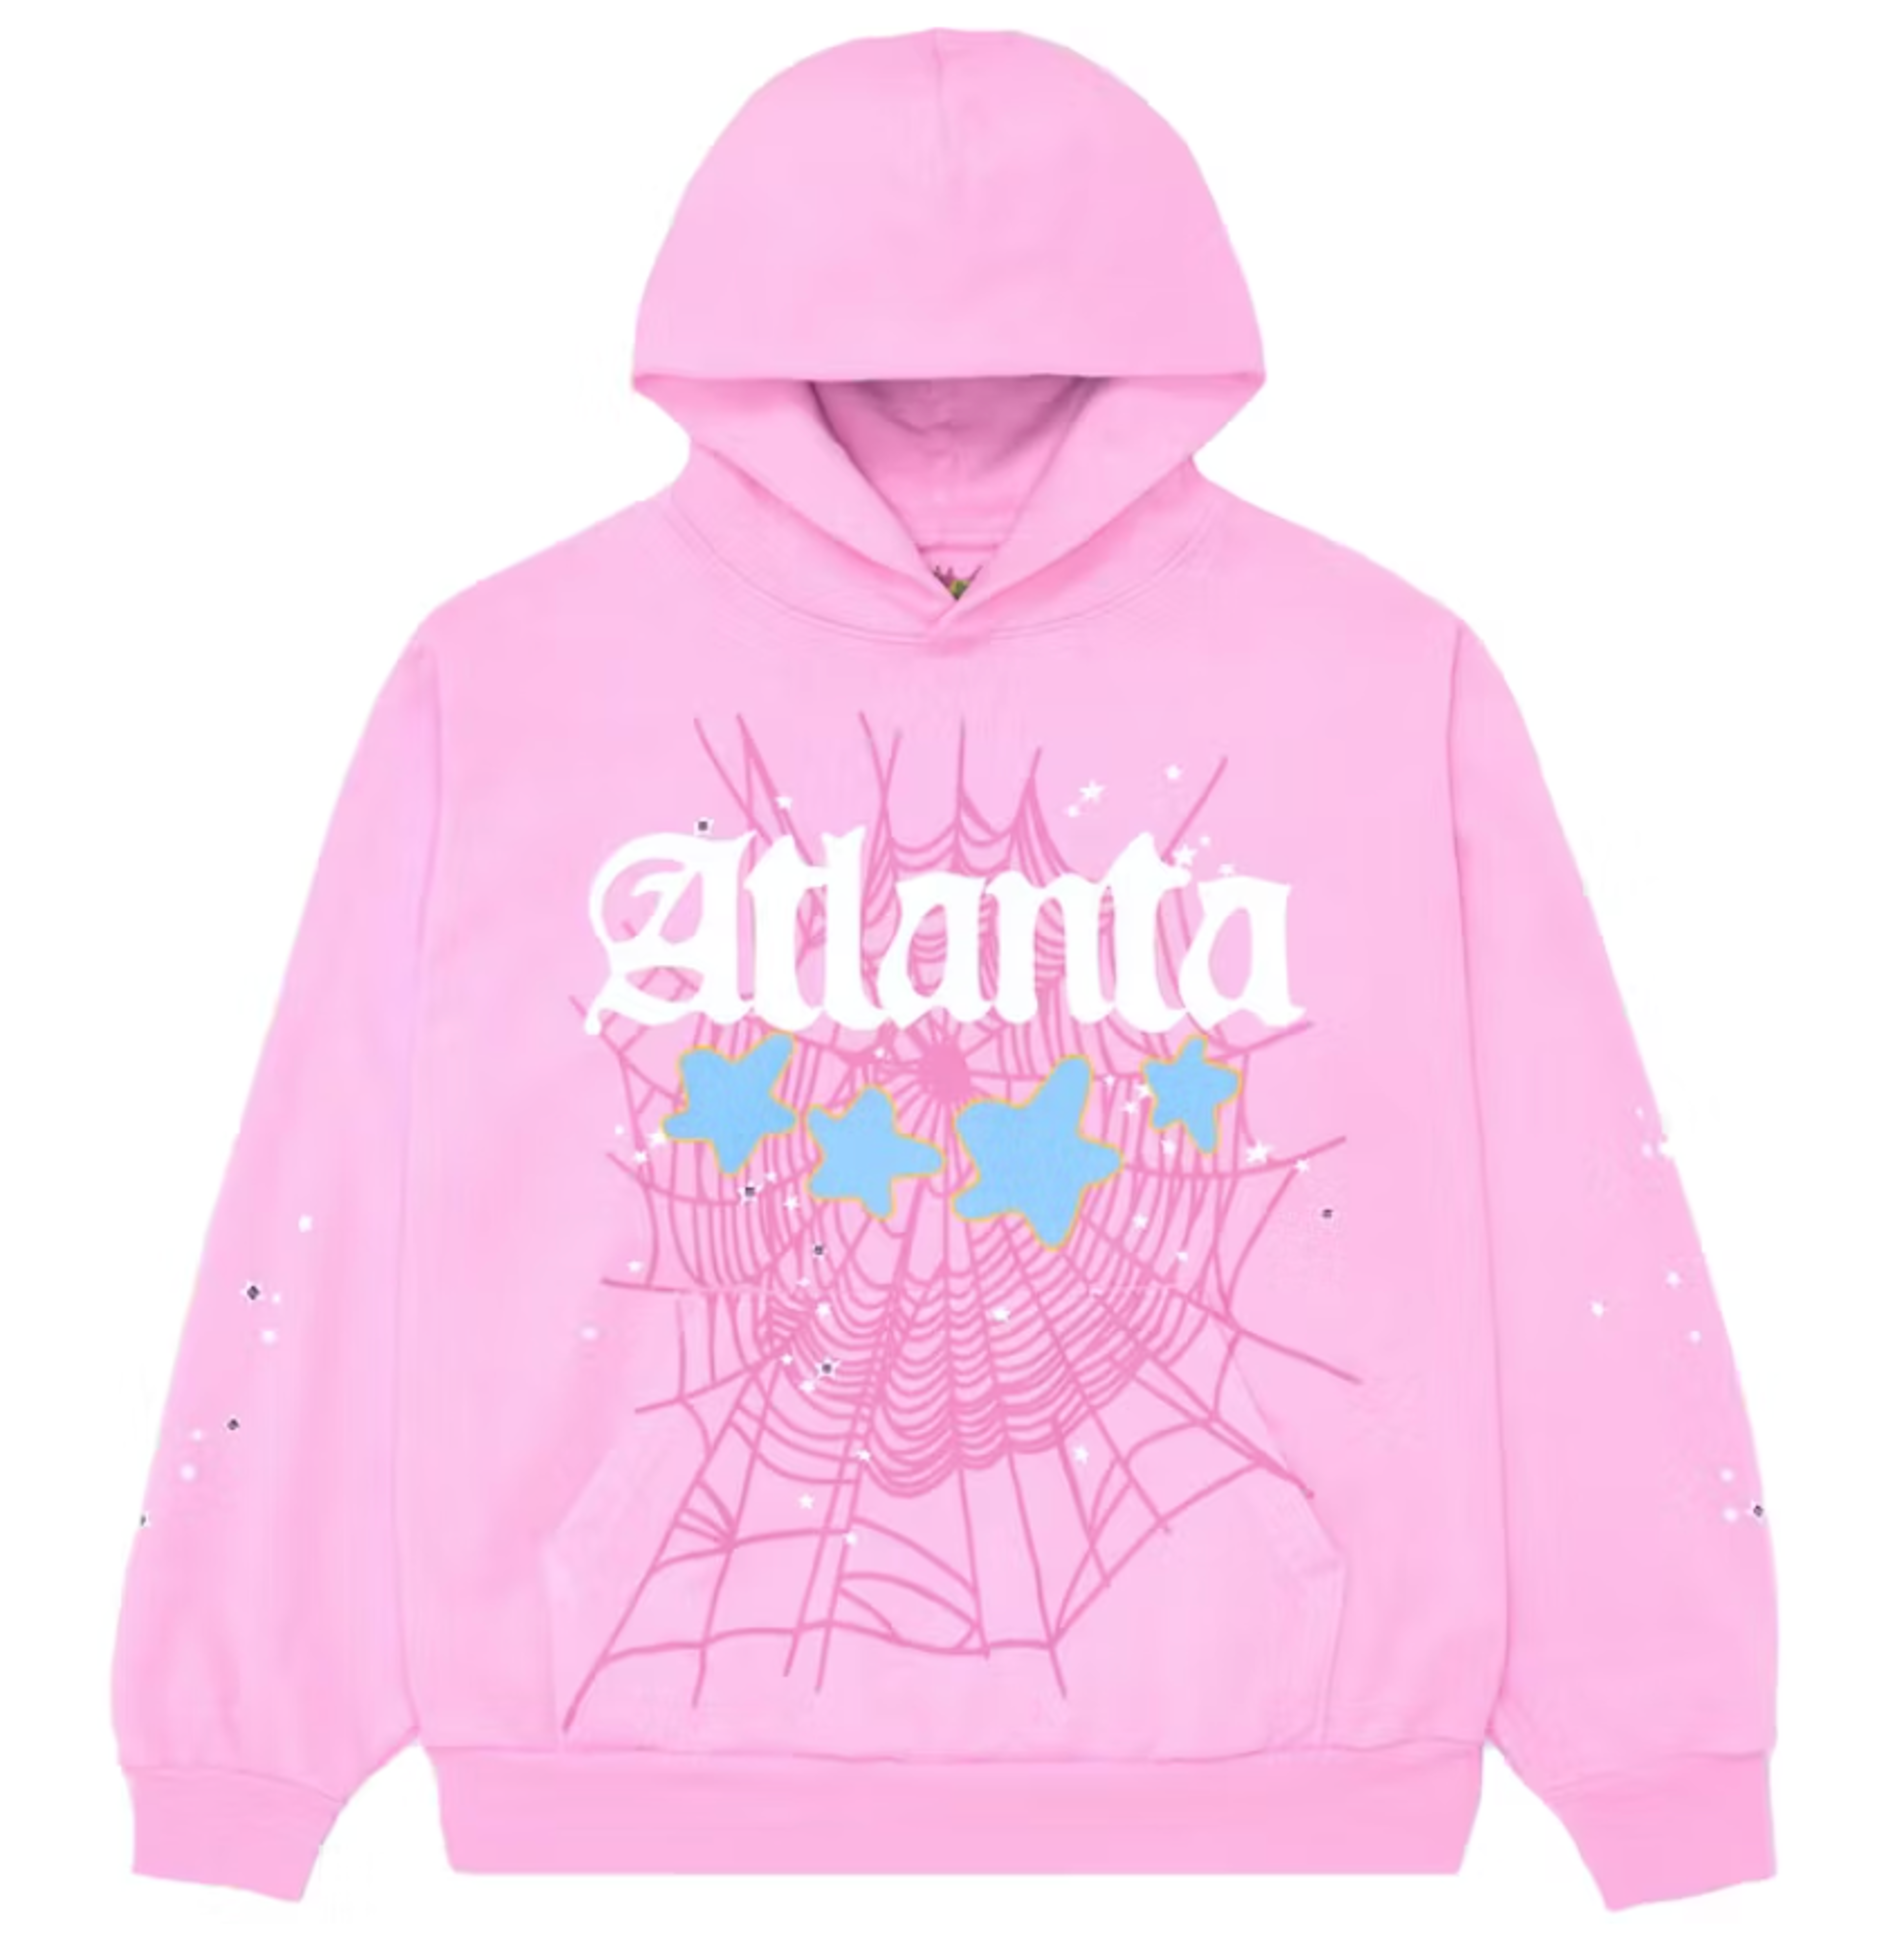 Sp5der Atlanta Hoodie - Pink